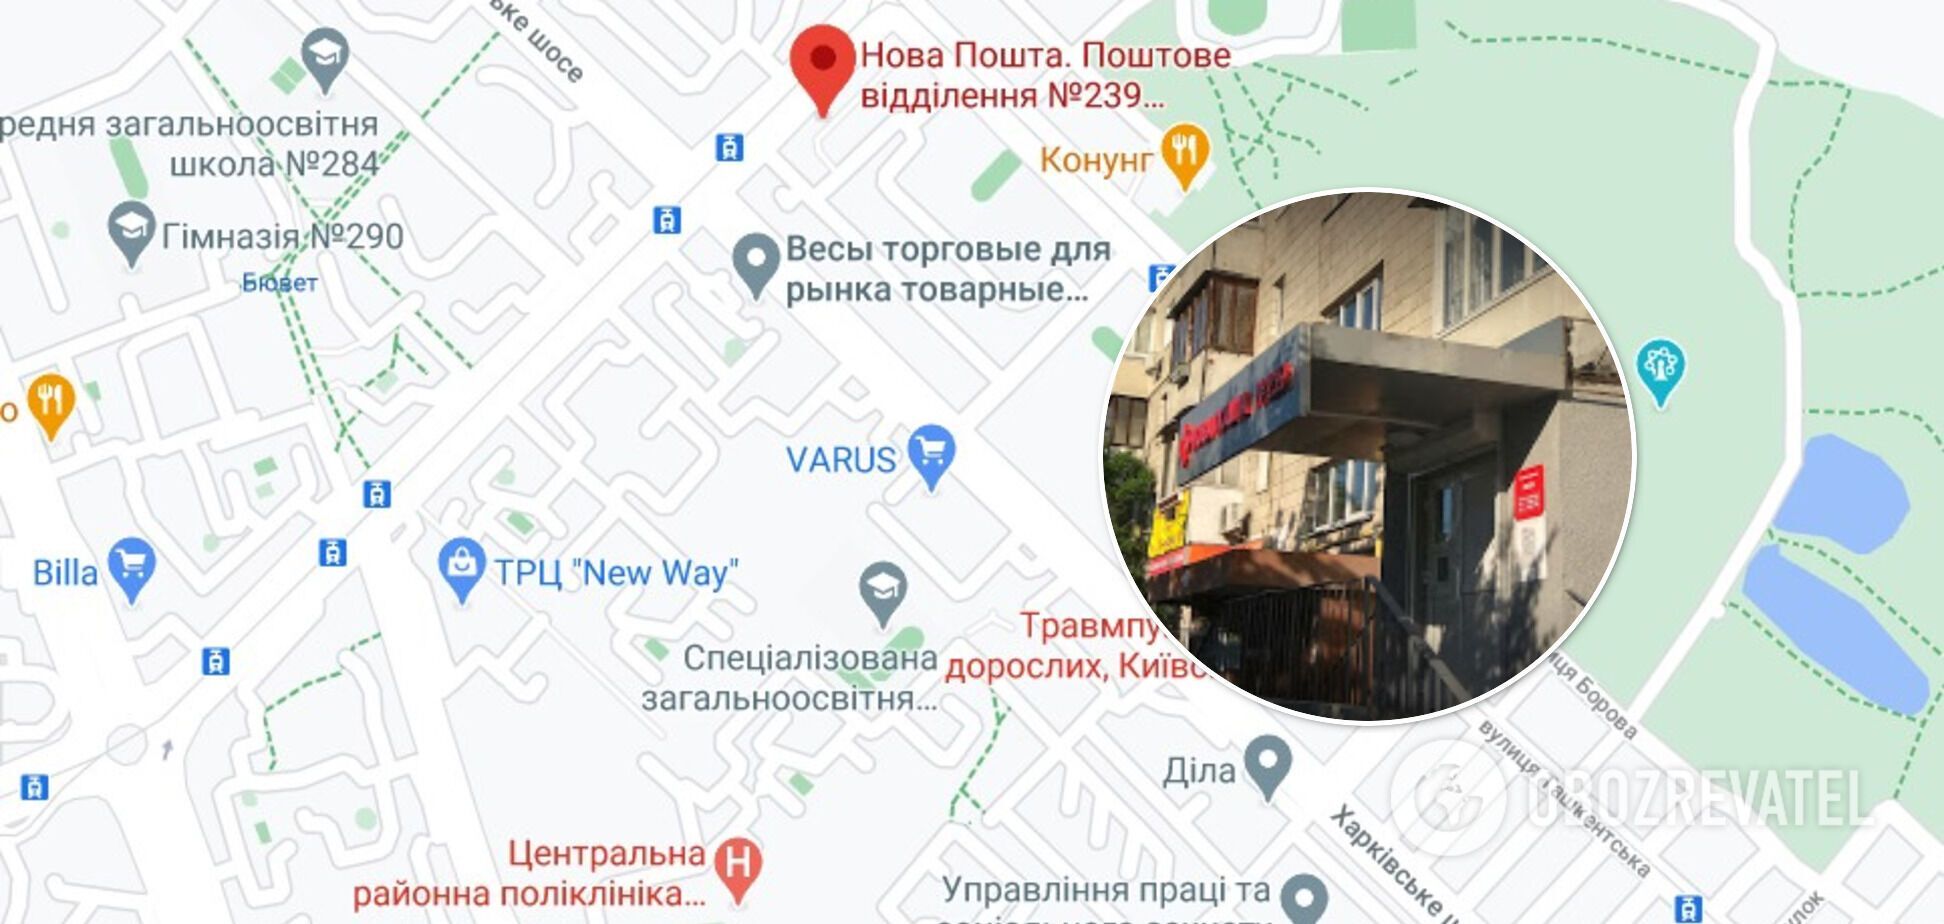 У відділенні "Нової пошти" у Києві стався розбійний напад